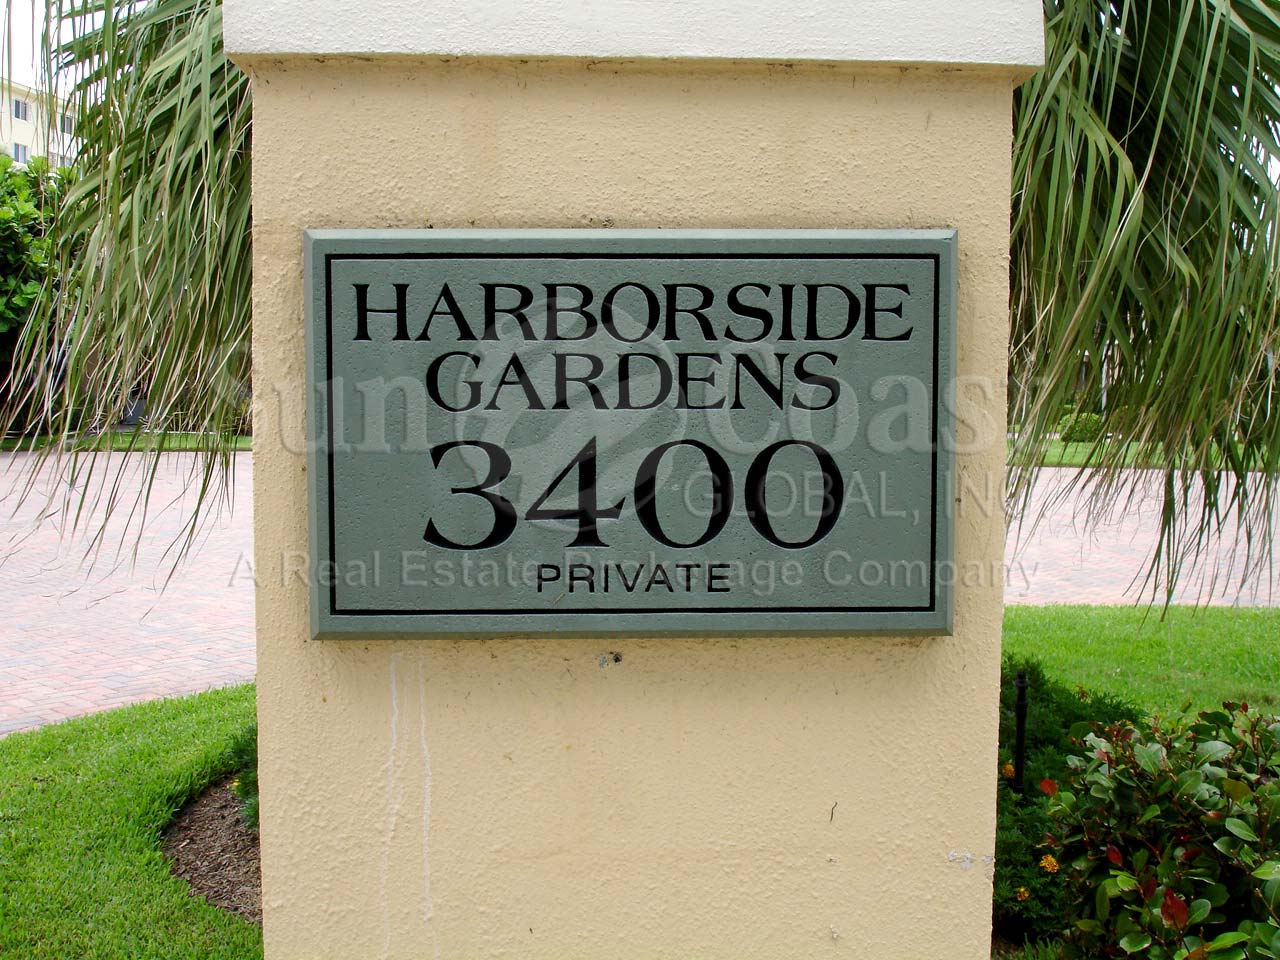 Harborside Gardens sign